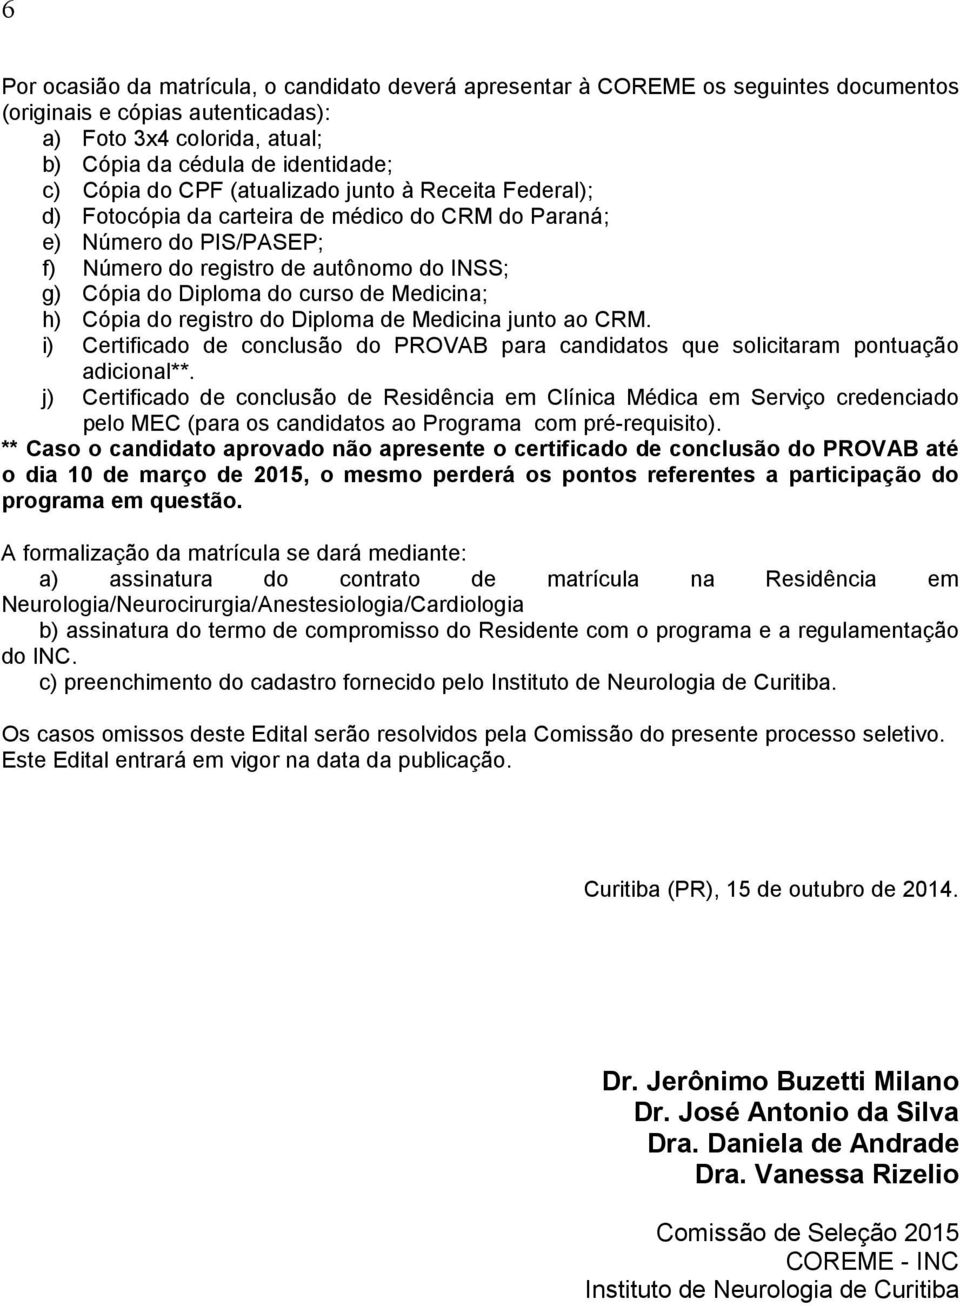 Medicina; h) Cópia do registro do Diploma de Medicina junto ao CRM. i) Certificado de conclusão do PROVAB para candidatos que solicitaram pontuação adicional**.